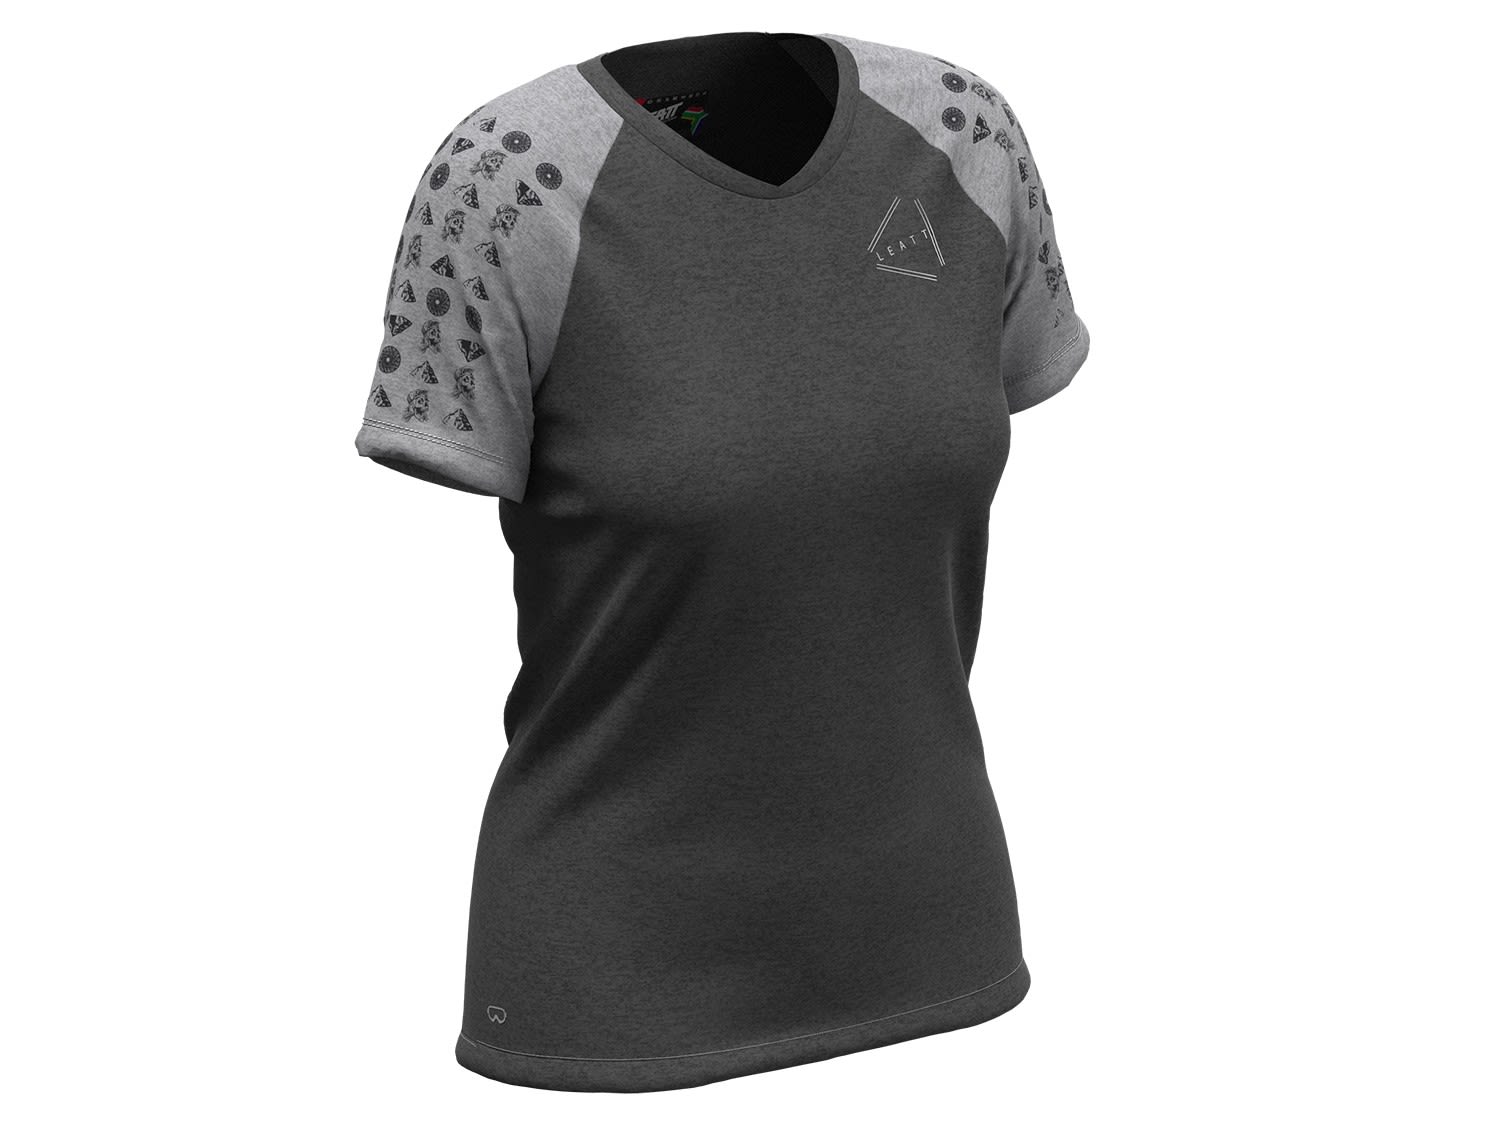 Leatt MTB All Mountain 2-0 Jersey Grau- Female Kurzarm-Shirts- Grsse L - Farbe Black unter Leatt